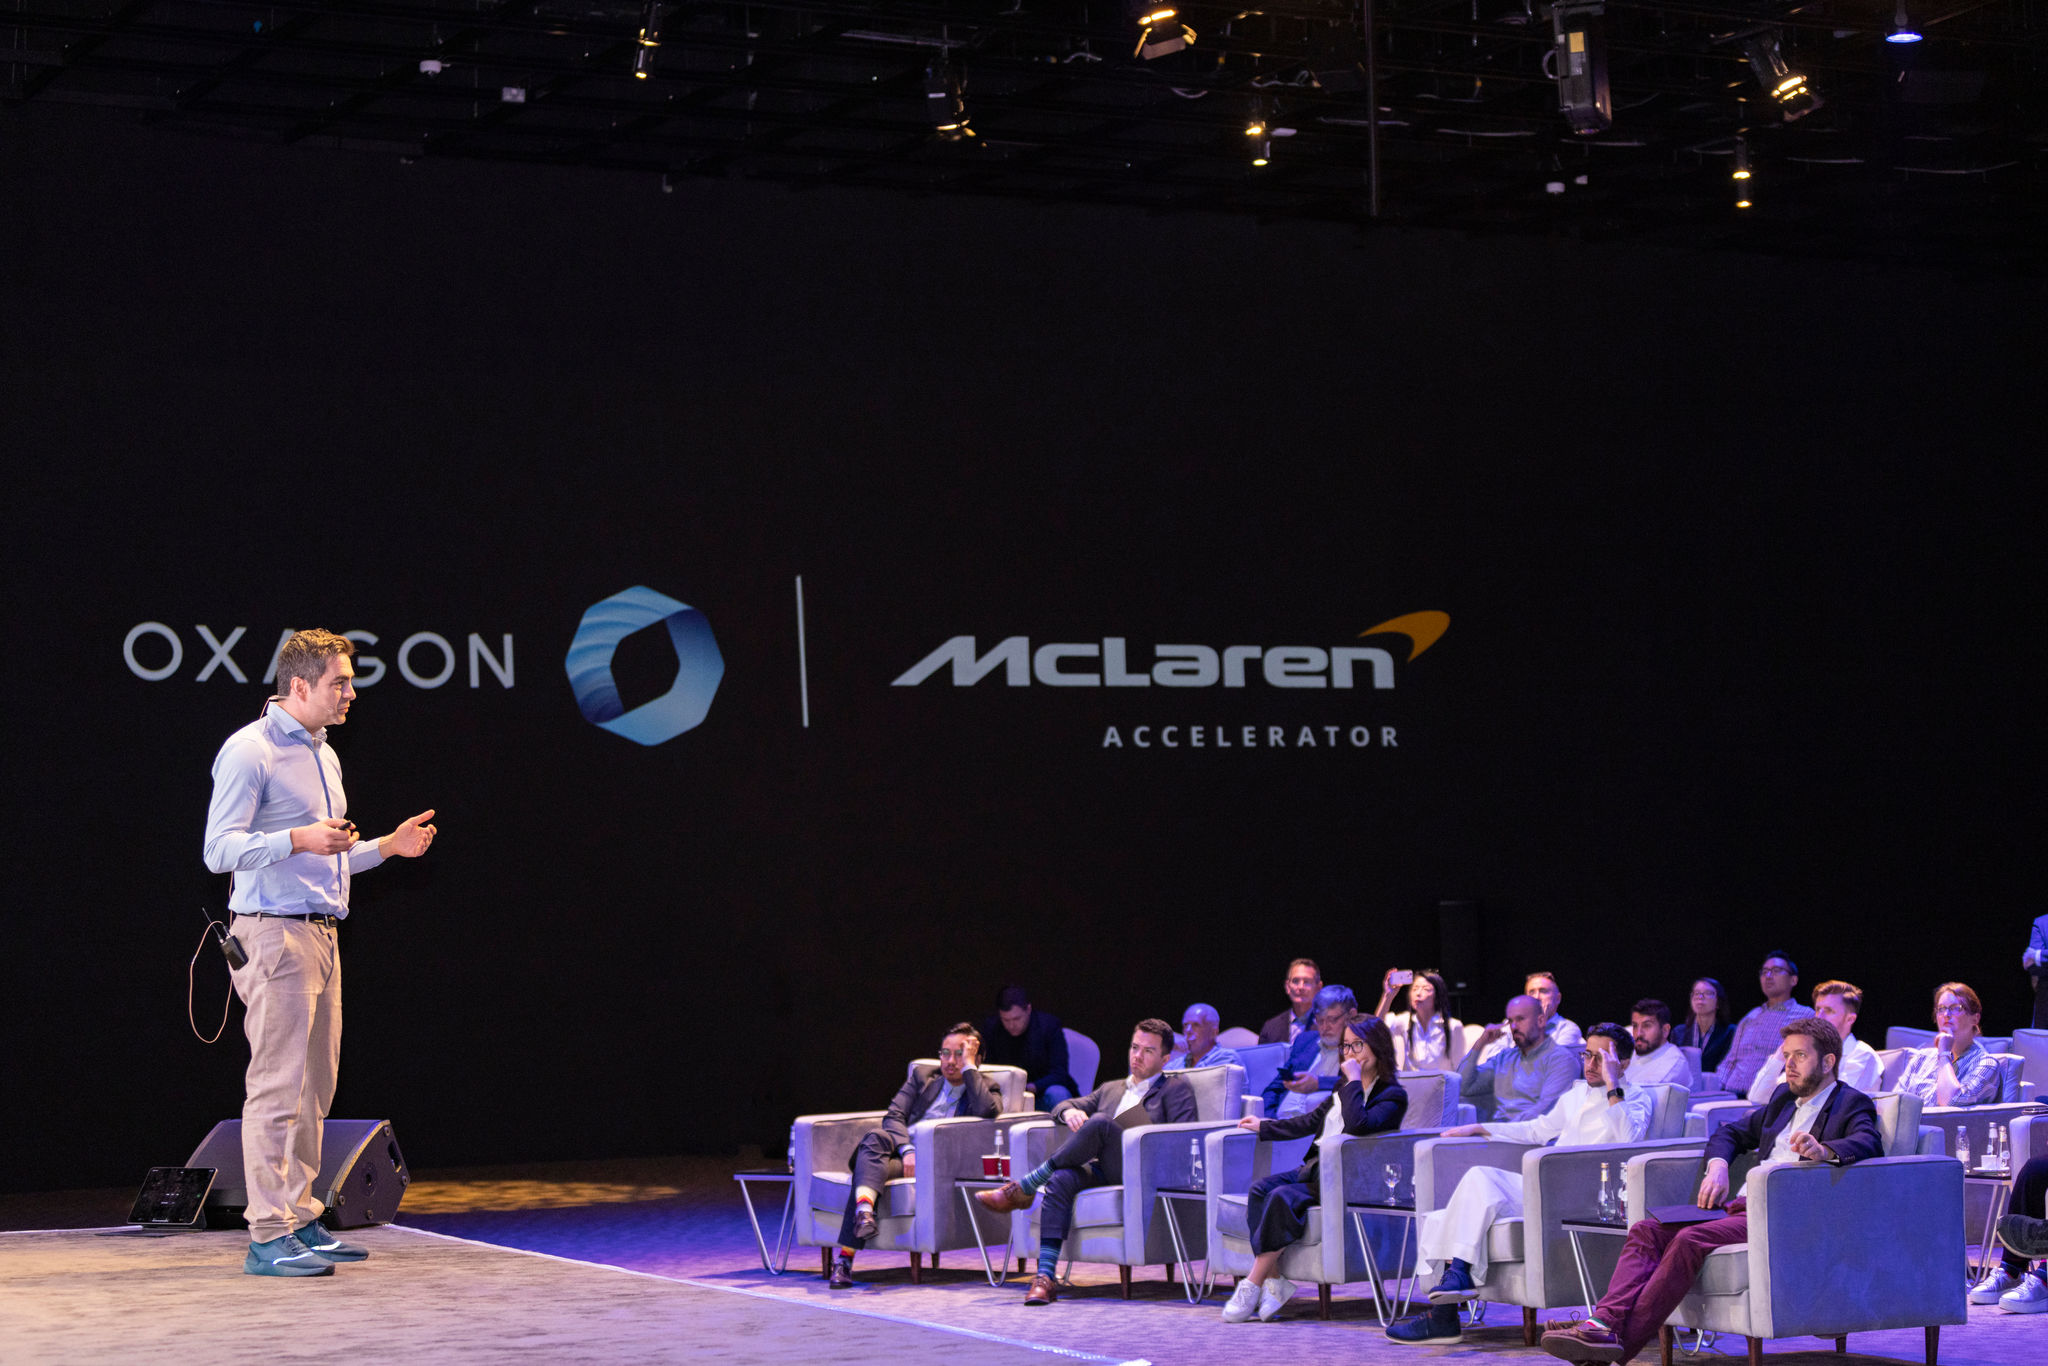 Площадка Oxagon x McLaren Accelerator в Эр-Рияде, где участники могут предлагать новые идеи инвесторам и компаниям